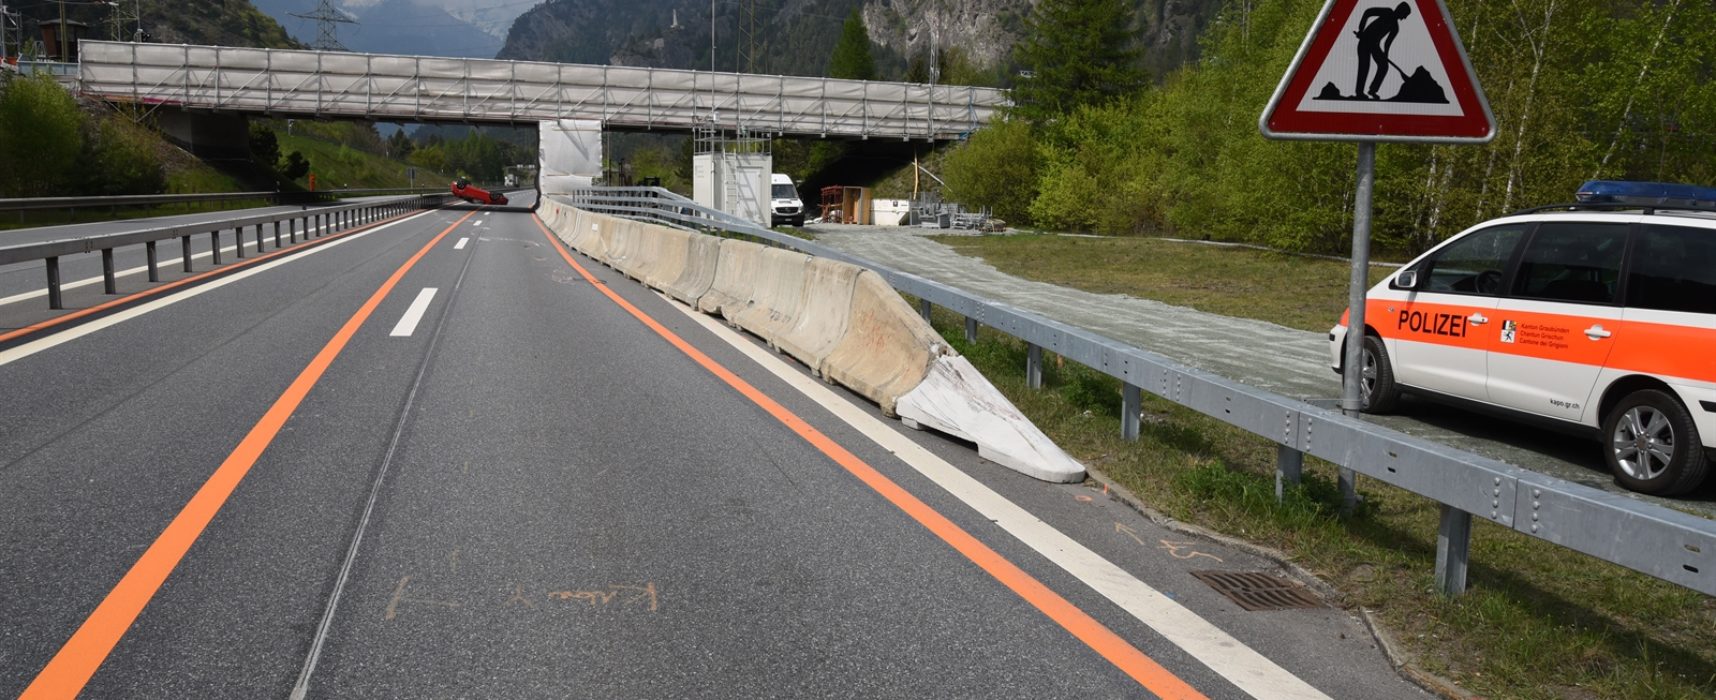 Unfall auf der A13 in Rothenbrunnen